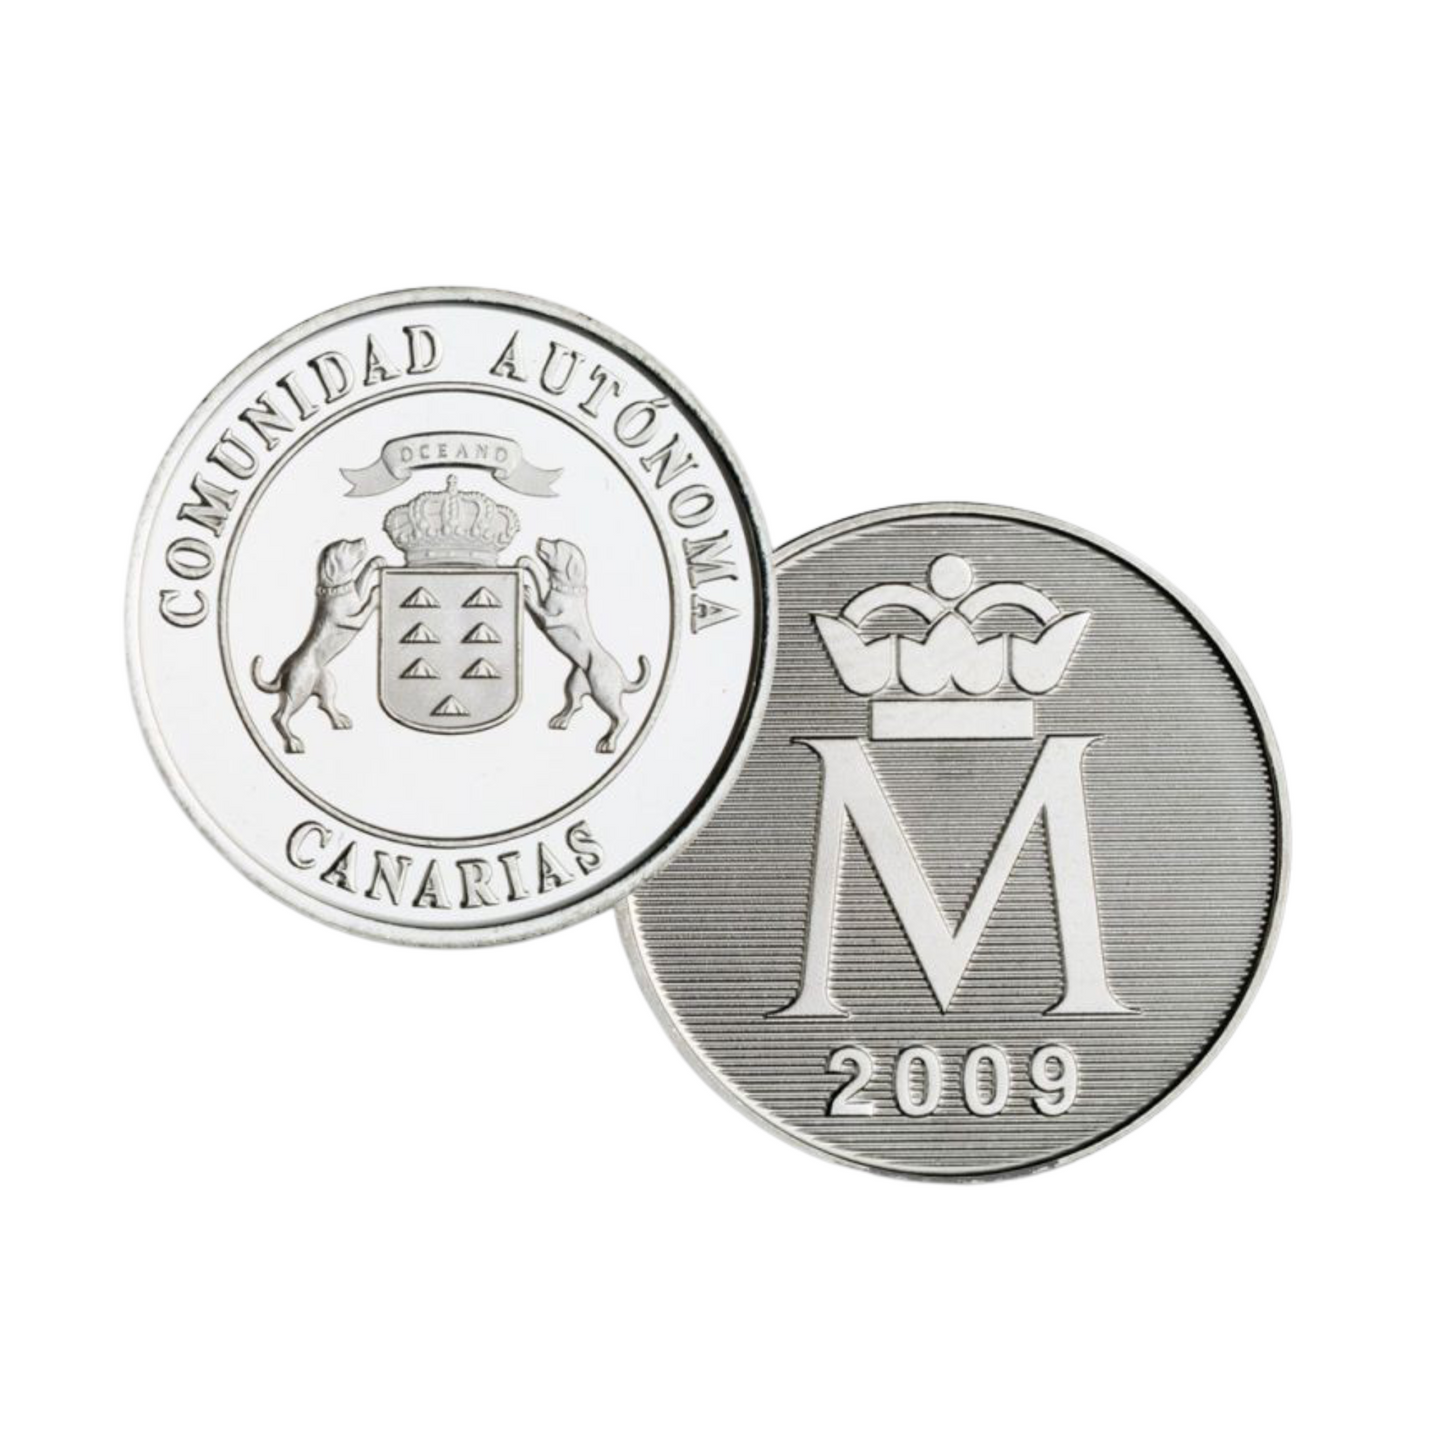 España - Euroset BU Autonomías (Canarias) monedas euro 2009